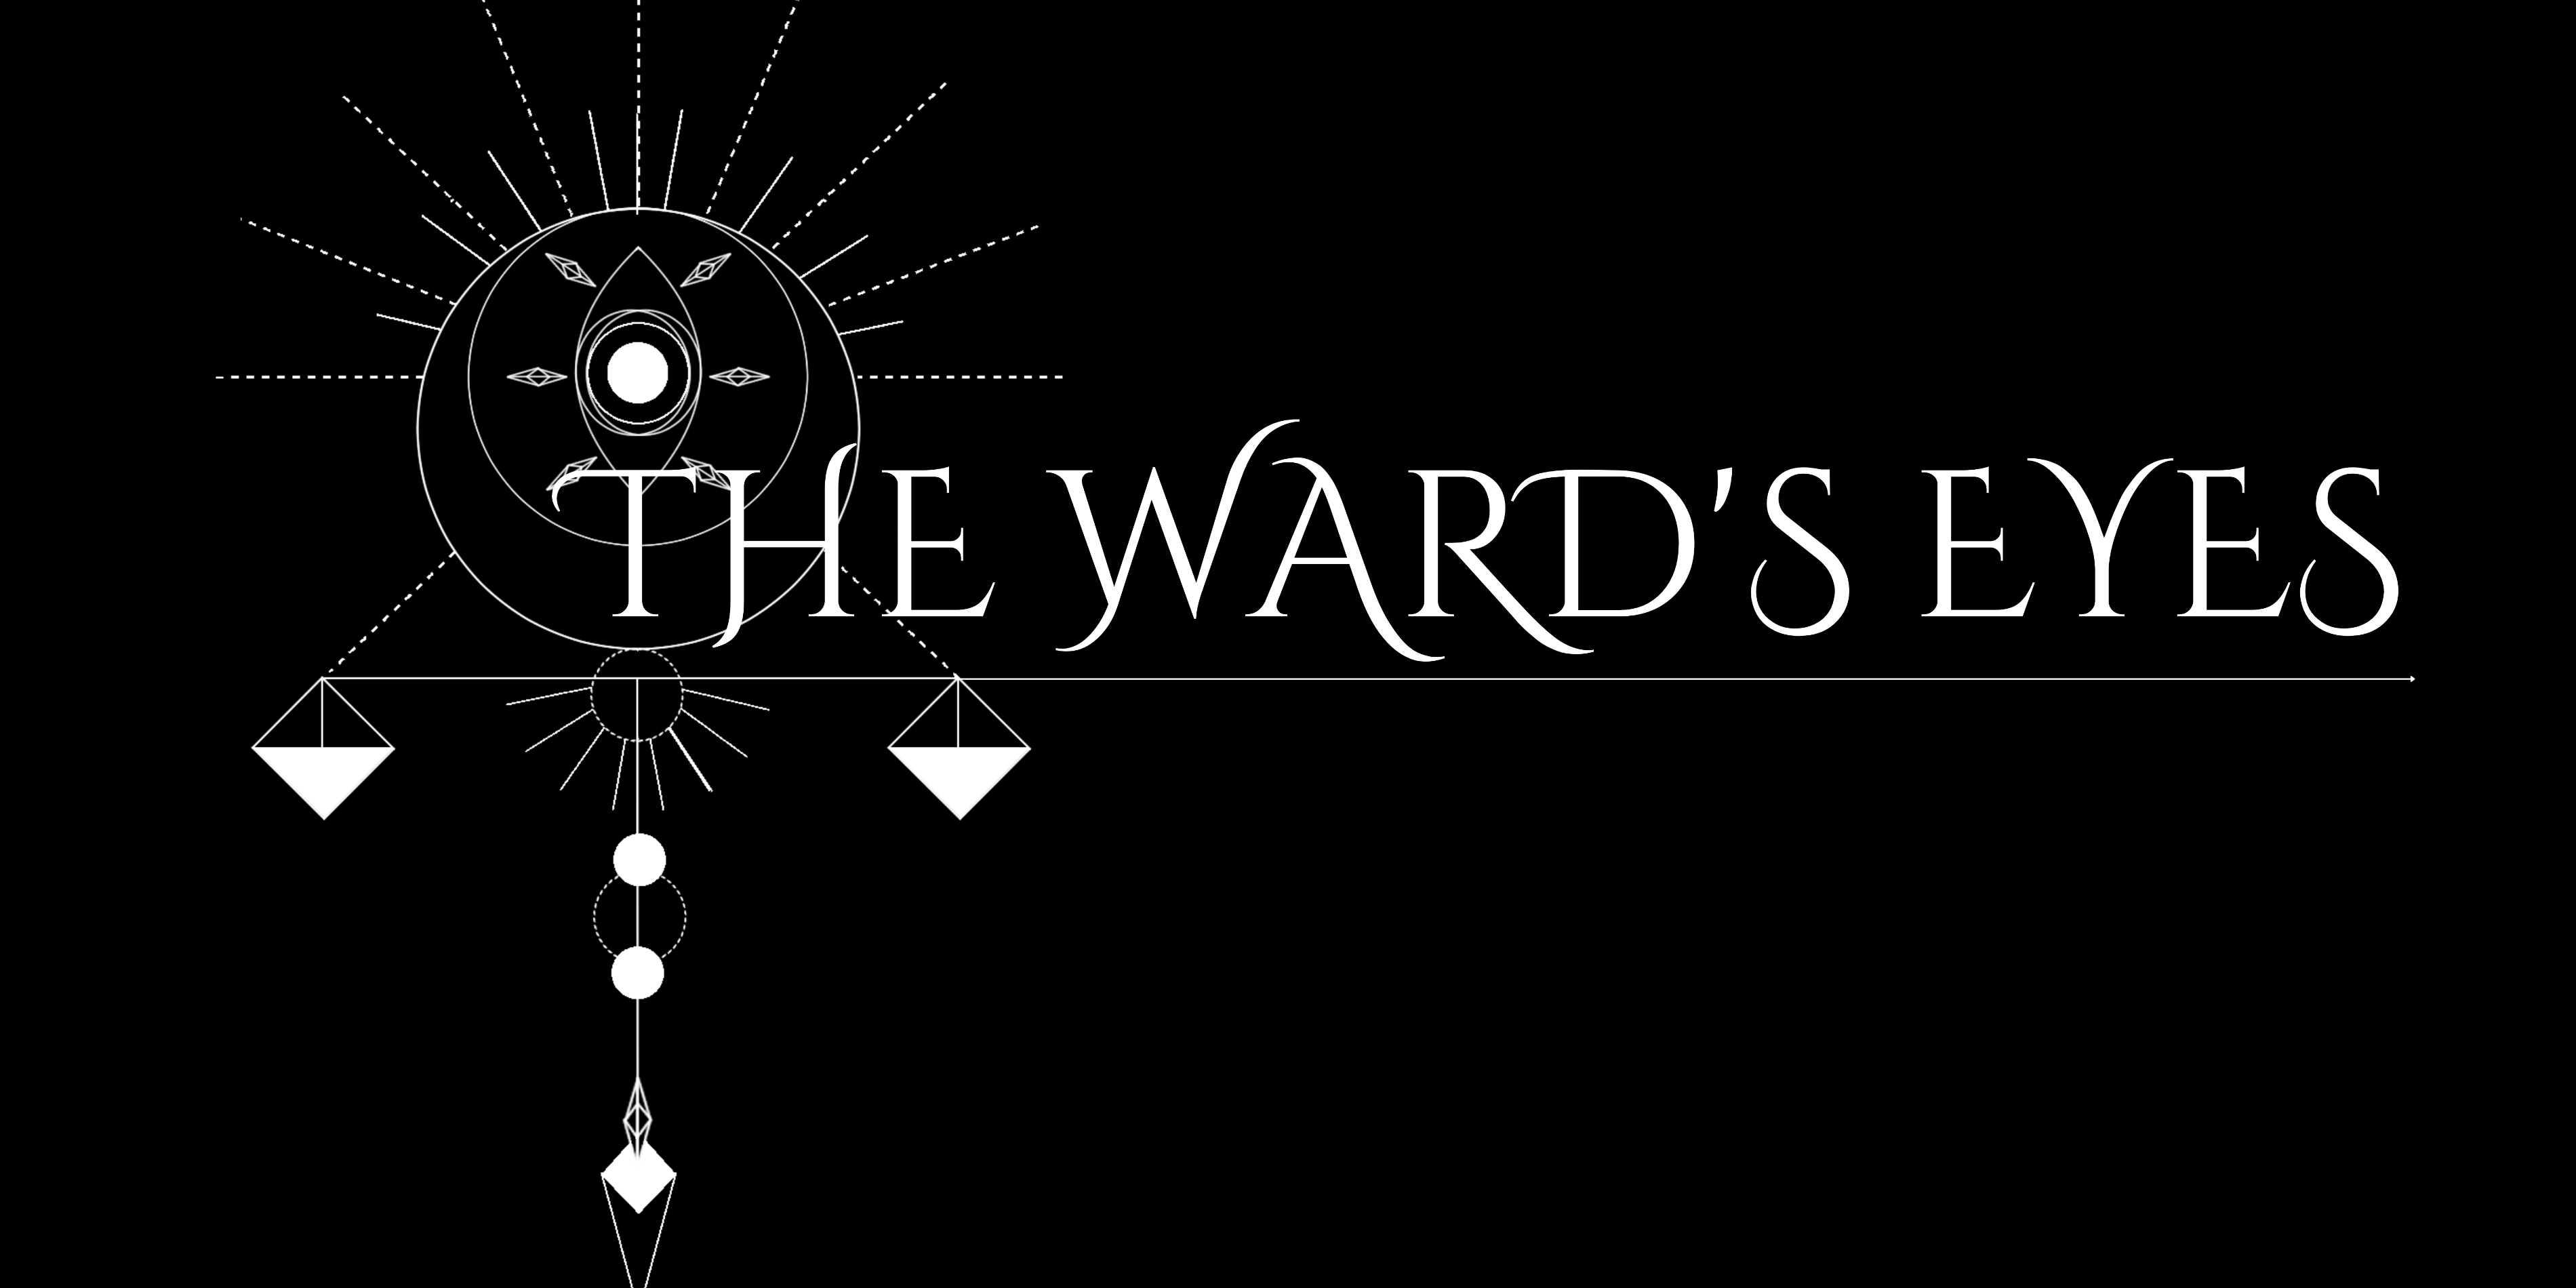 The Ward's Eyes